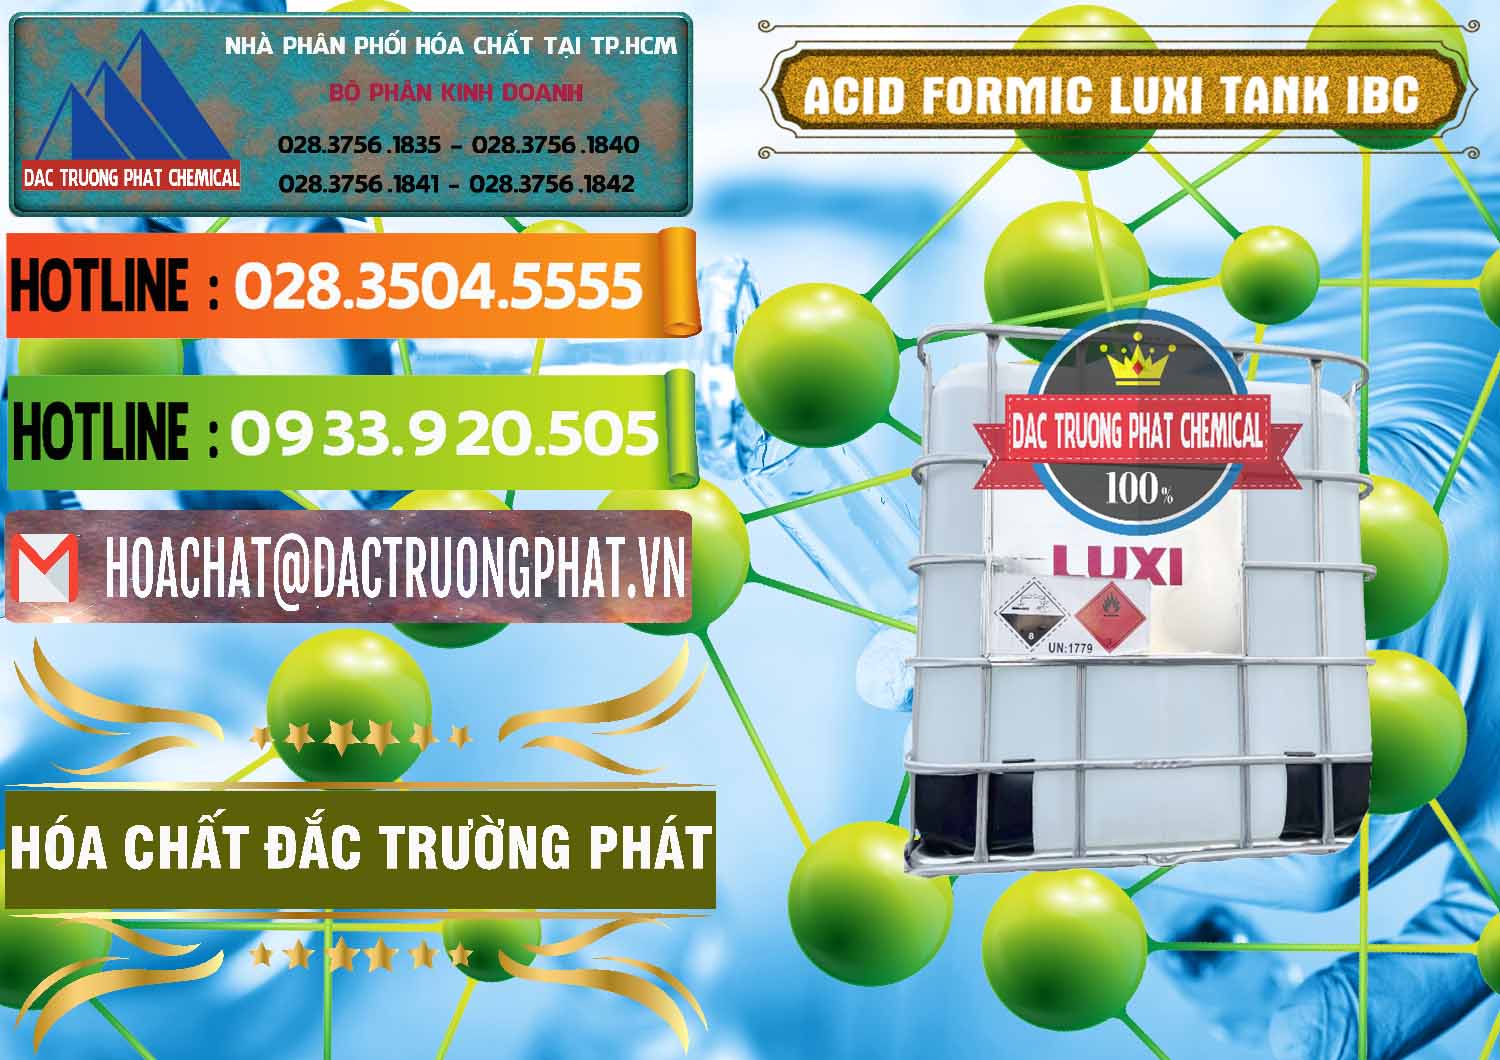 Nơi cung ứng - bán Acid Formic - Acid Formic Tank - Bồn IBC Luxi Trung Quốc China - 0400 - Chuyên cung ứng và phân phối hóa chất tại TP.HCM - cungcaphoachat.com.vn